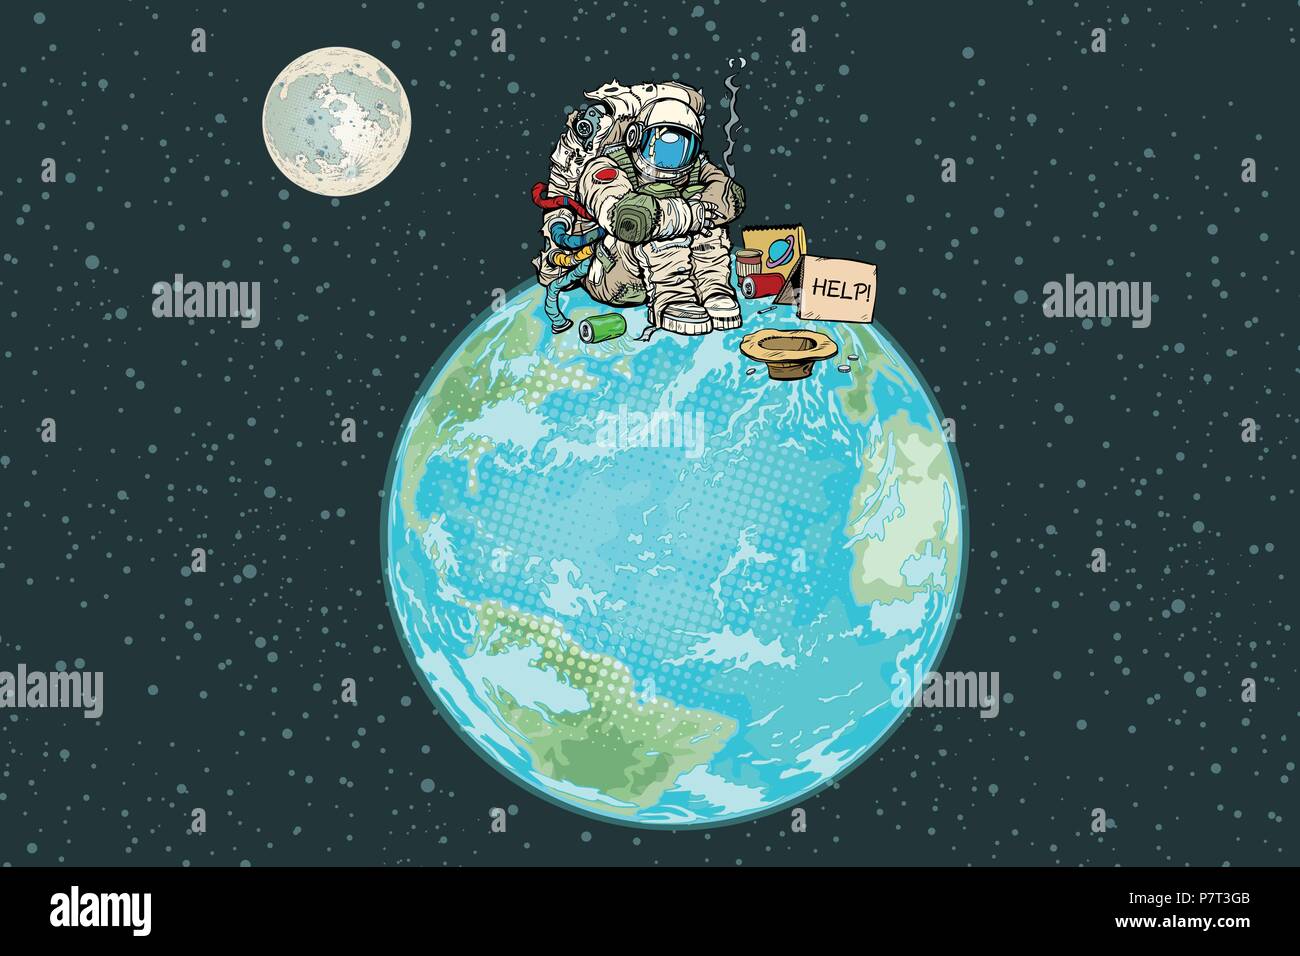 Astronaut bittet um Hilfe im Raum. Pop Art retro Vektor illustration Vintage kitsch Zeichnung Stock Vektor